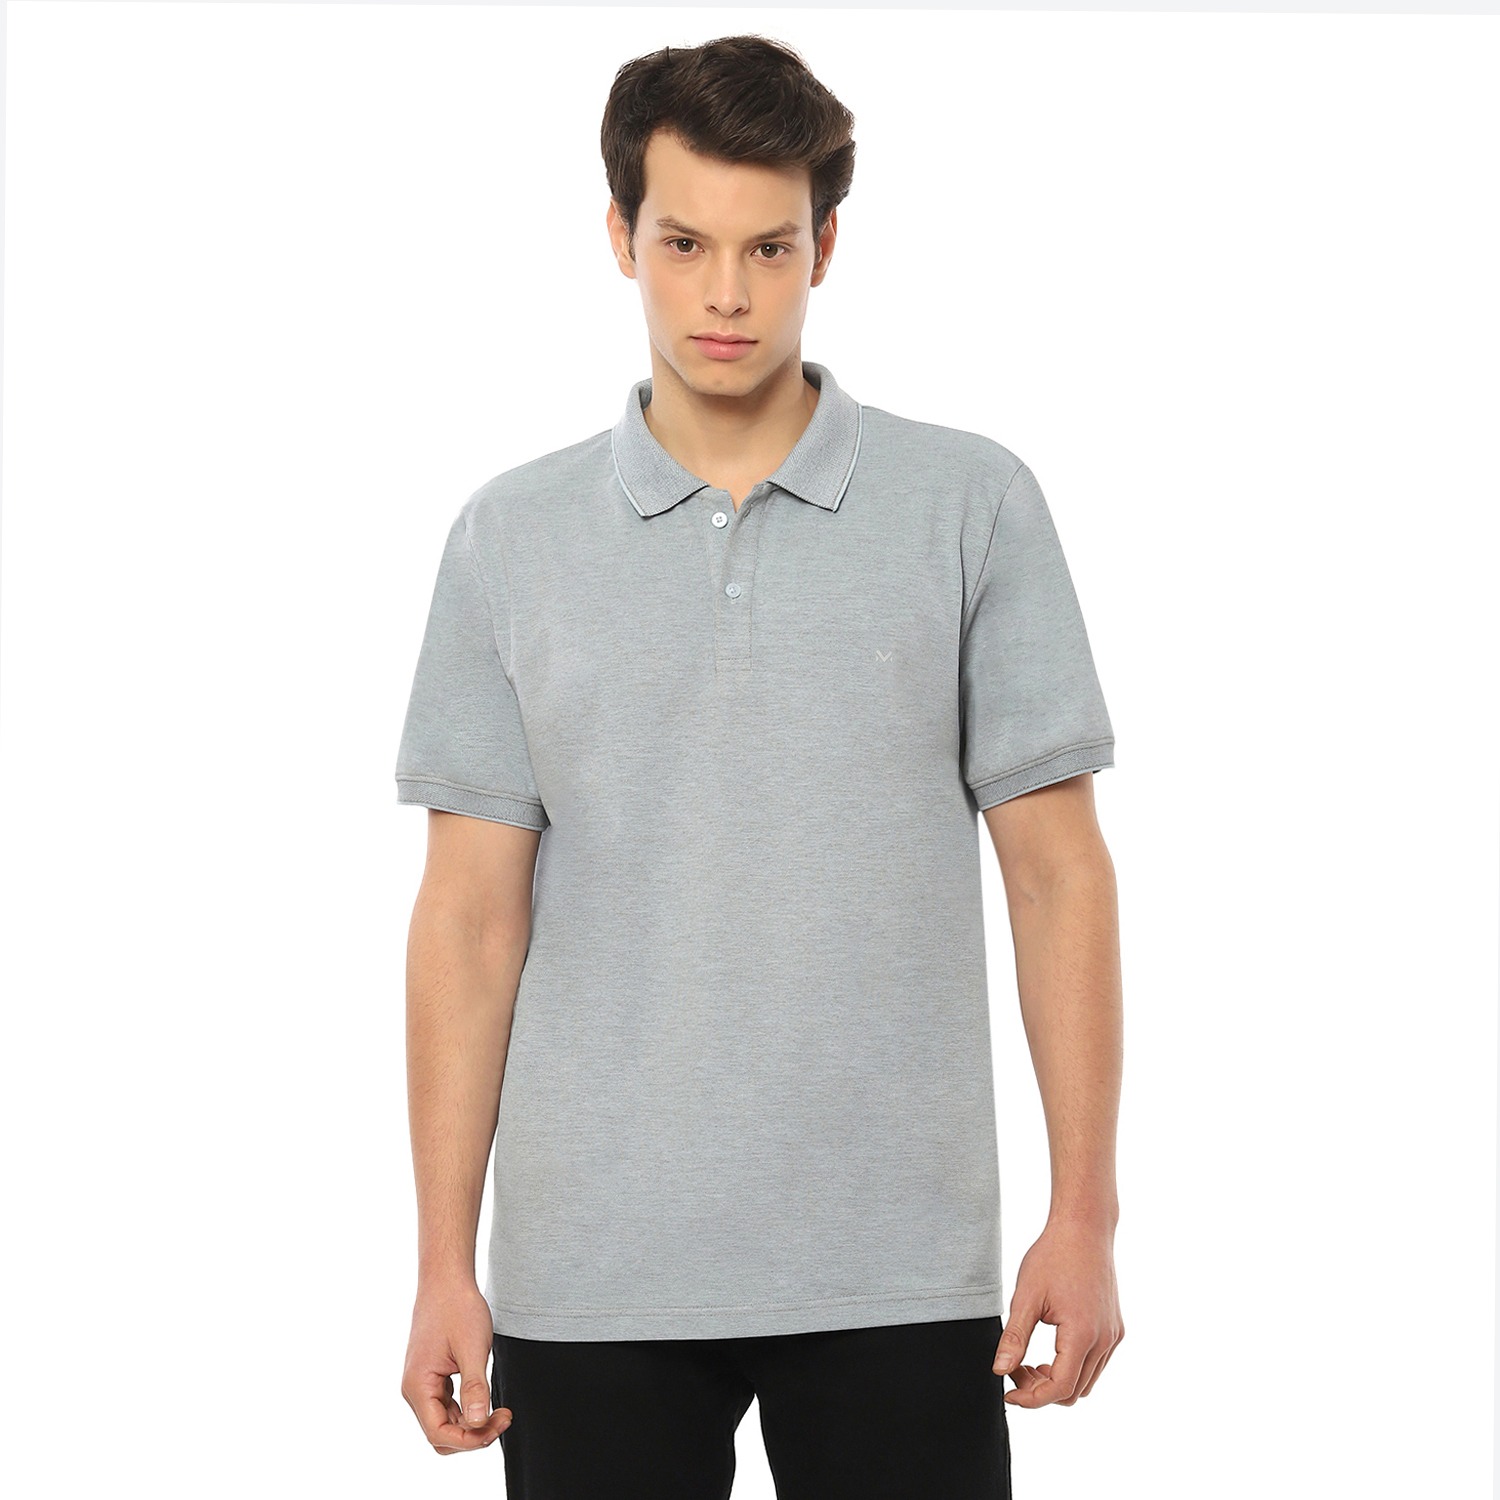 Men's Luxury Premium Superfine Cotton Plain Polo T Shirt